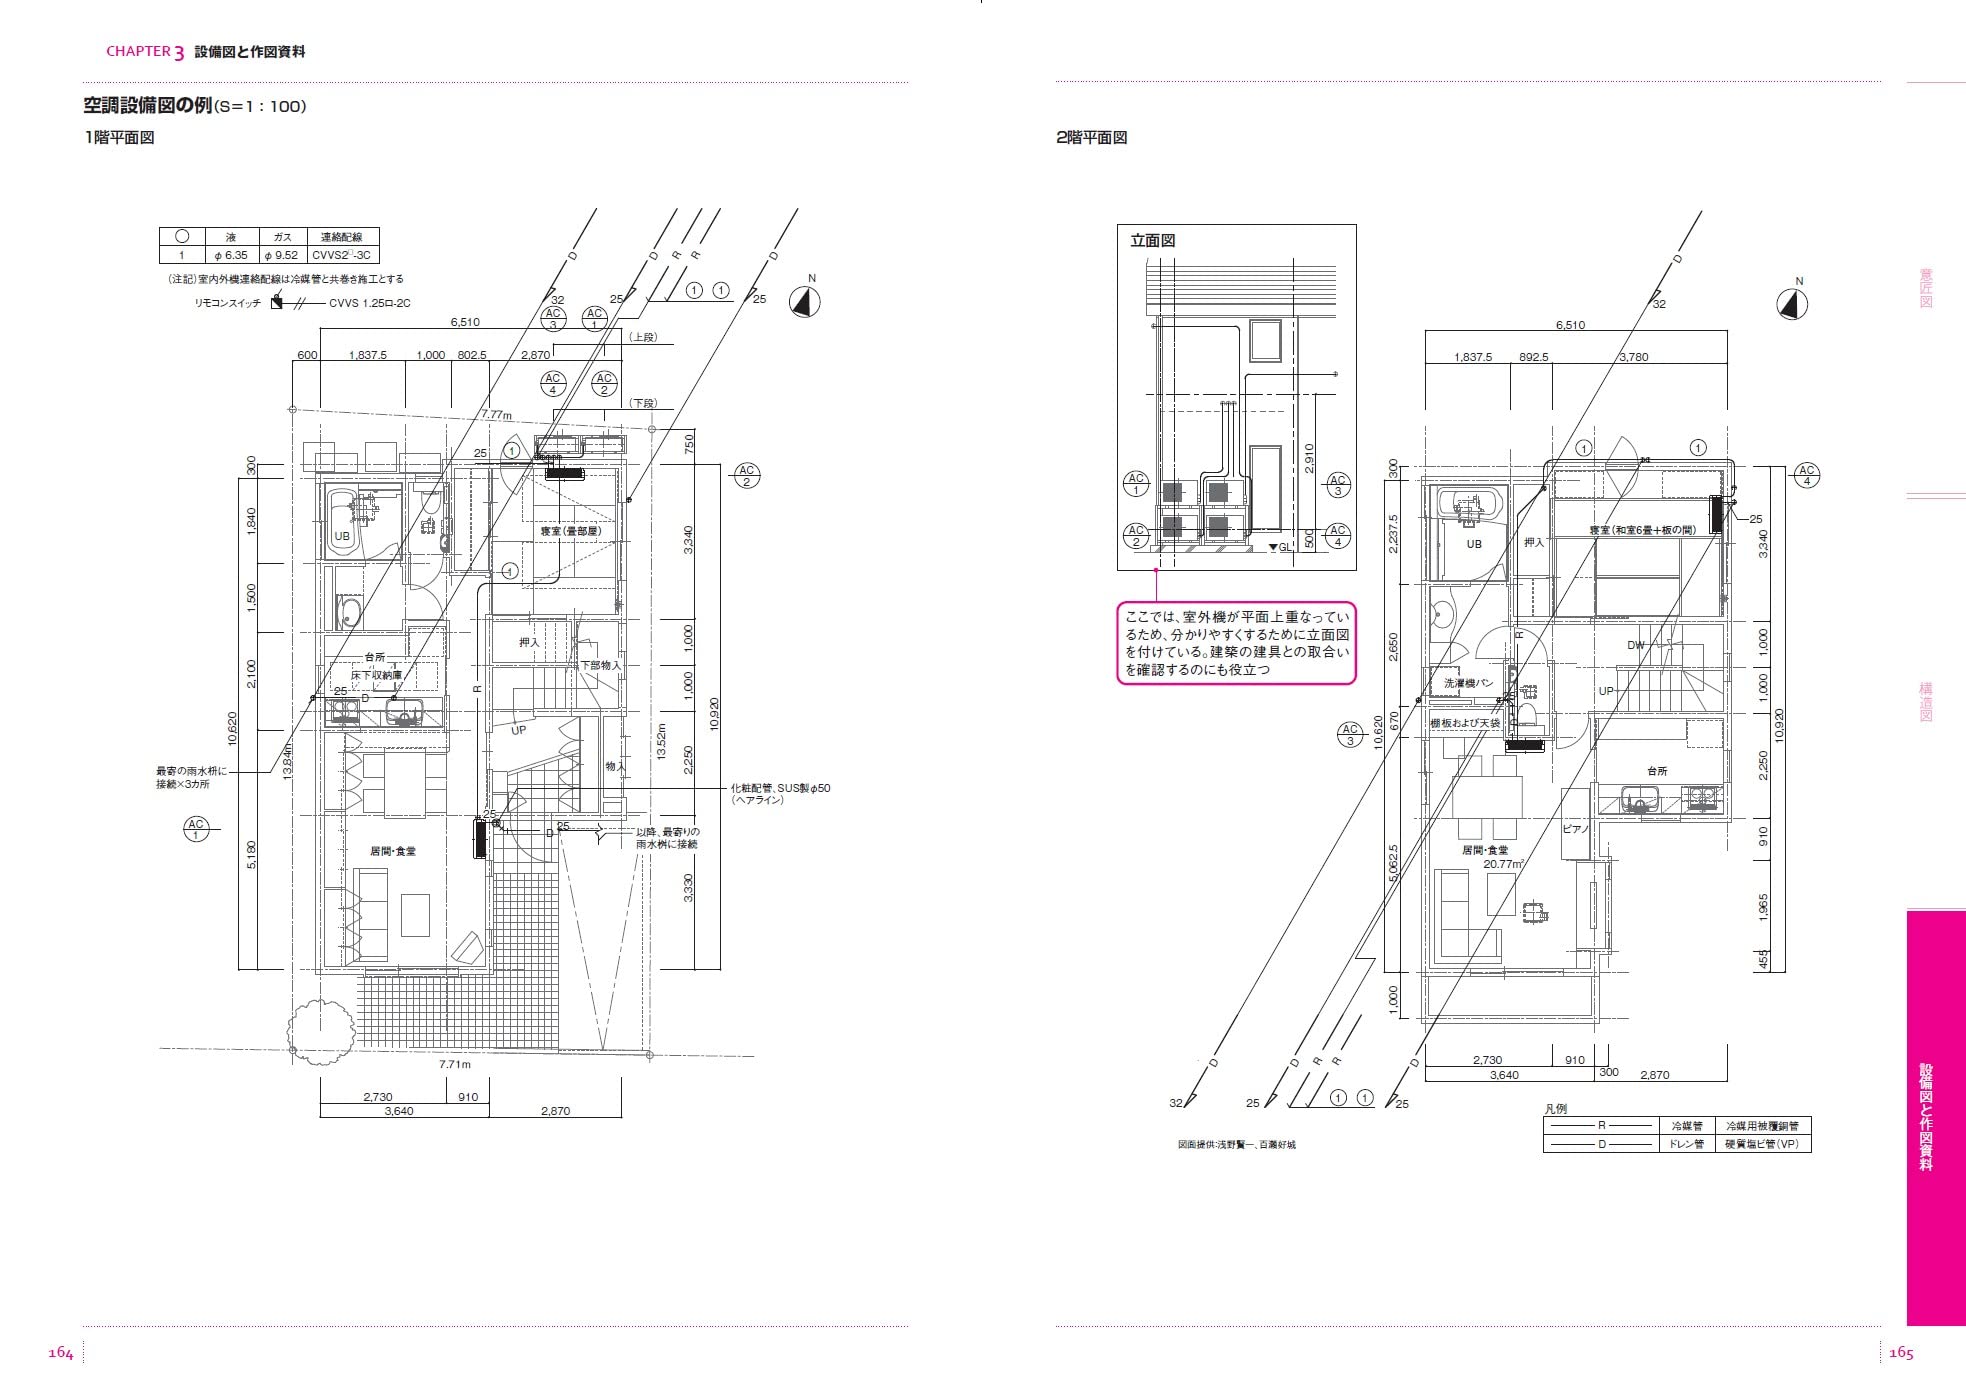 リフォームブックス / 世界で一番くわしい建築図面13 改訂版 A4判184頁